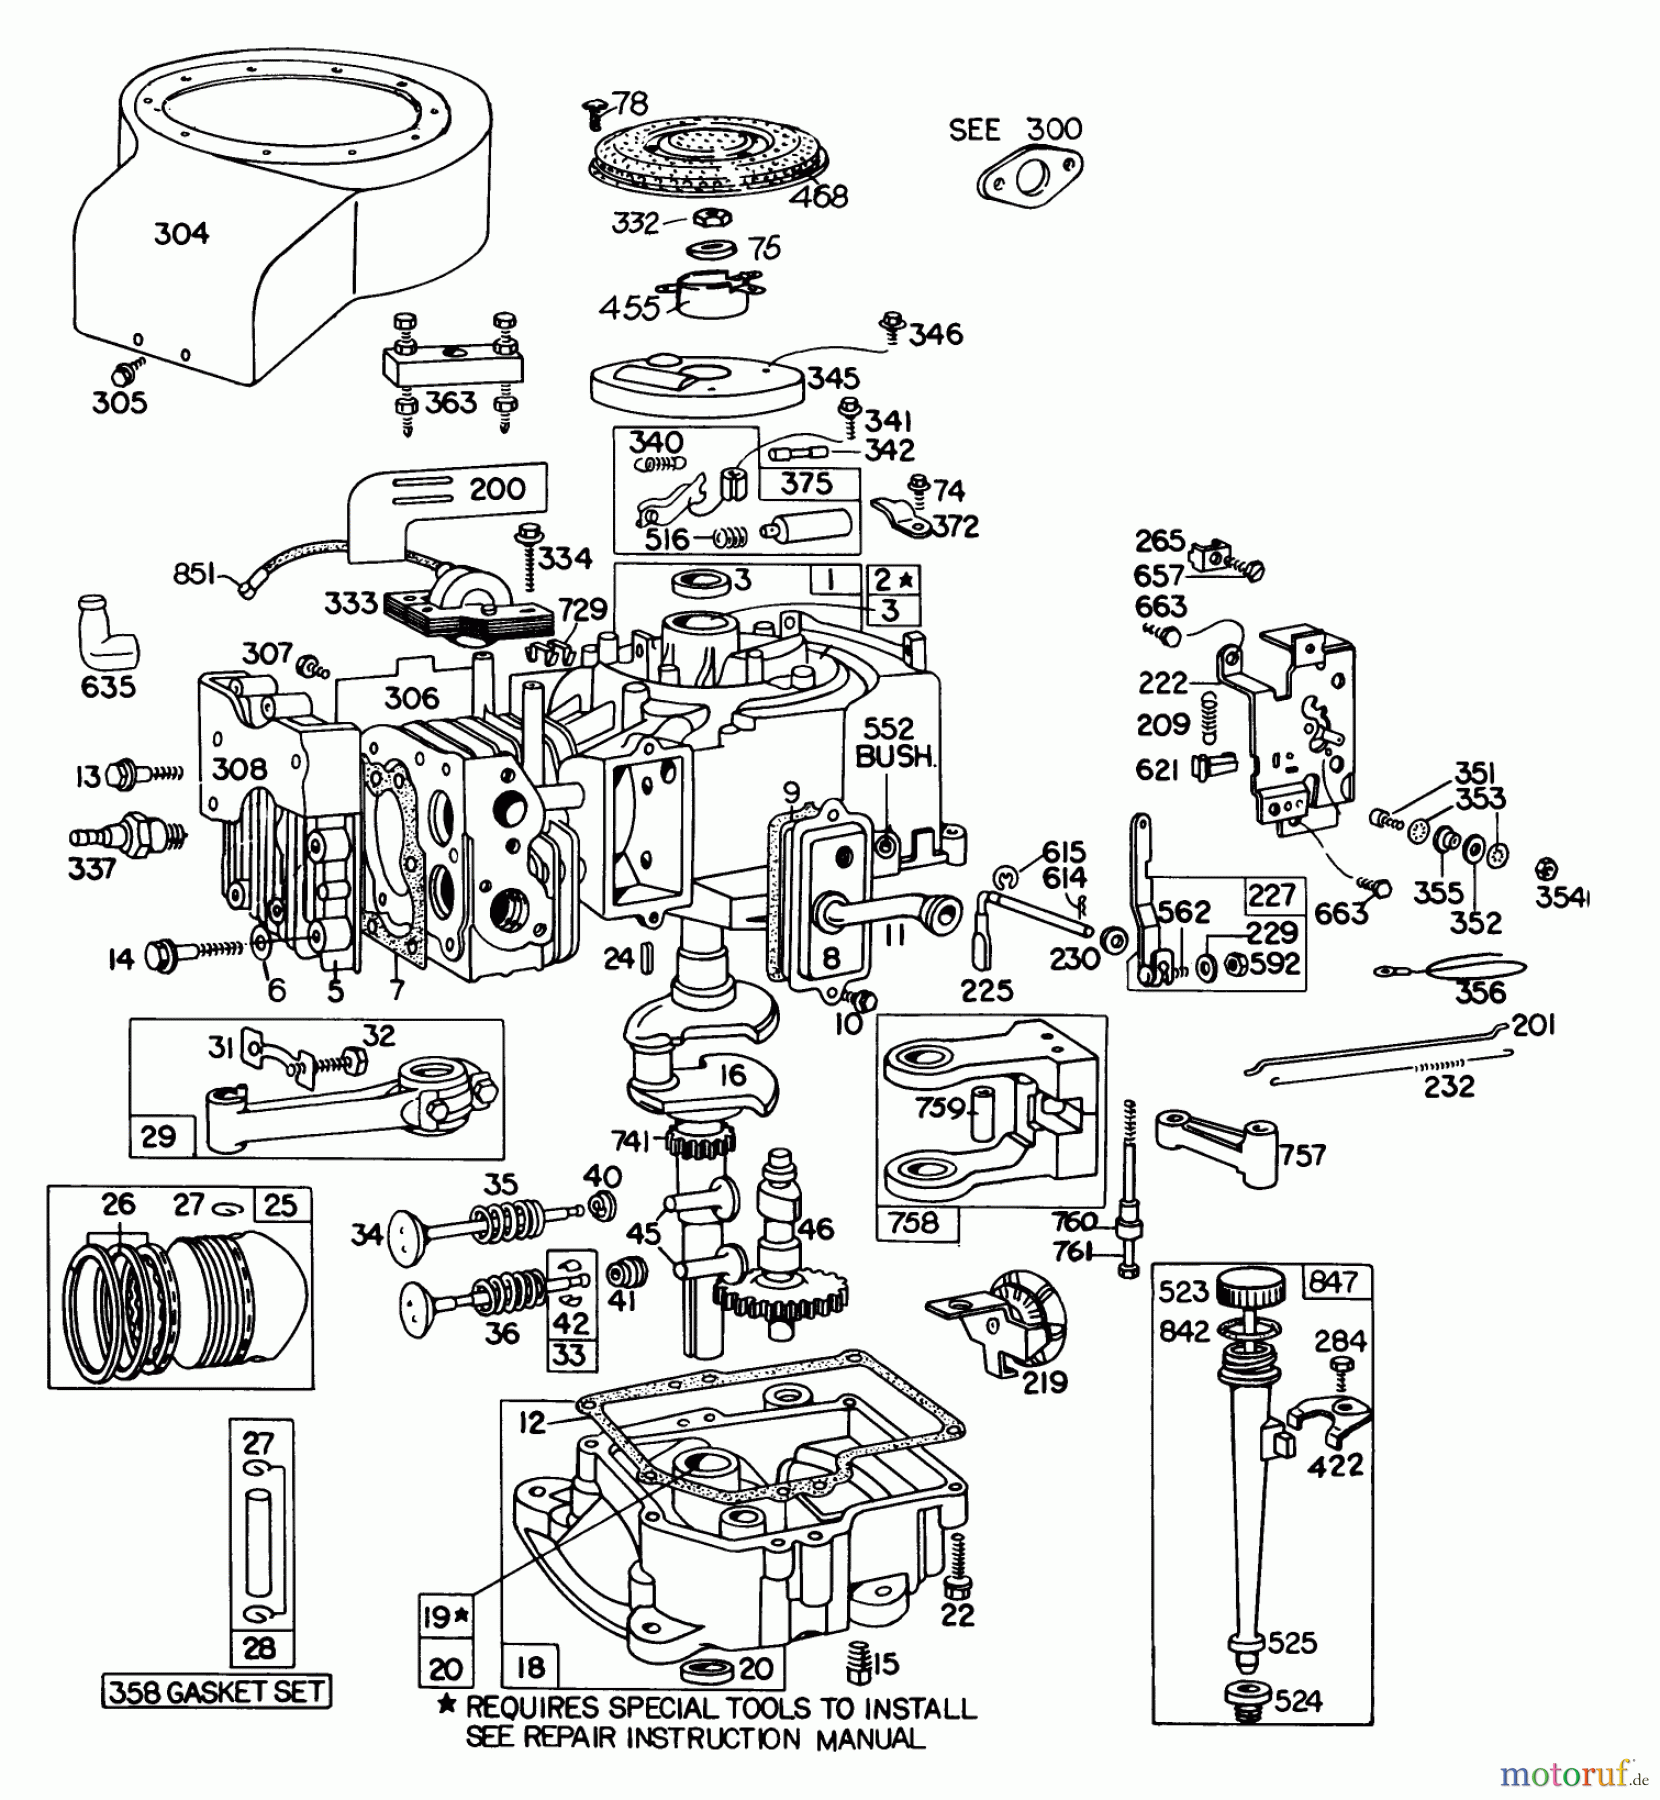  Toro Neu Mowers, Lawn & Garden Tractor Seite 1 57356 (11-42) - Toro 11-42 Lawn Tractor, 1978 (8000001-8999999) BRIGGS & STRATTON MODEL 252707-0146-01 #1